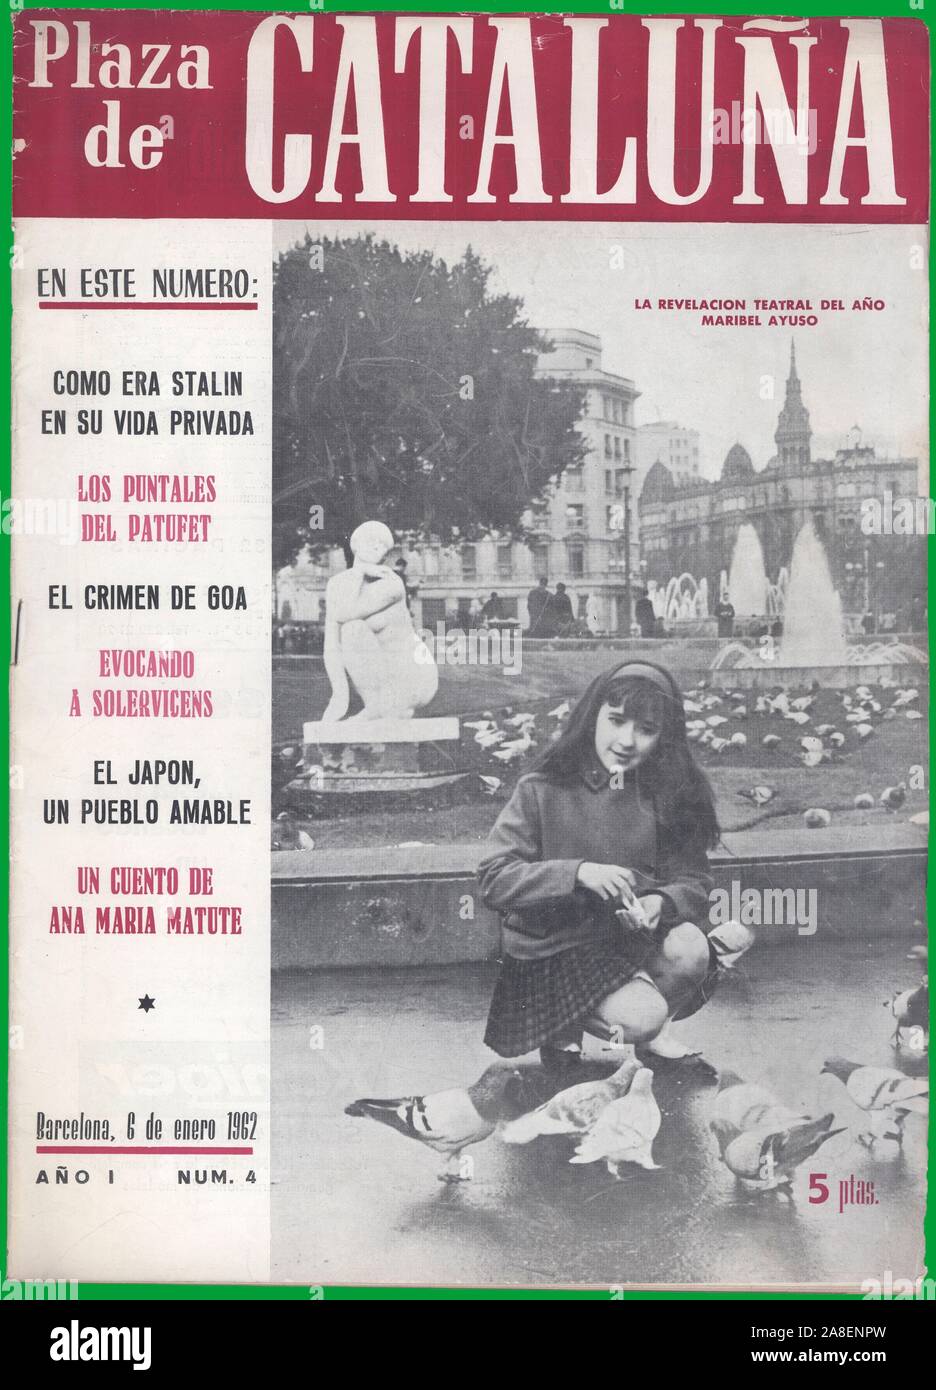 Portada de la revista Plaza de Catalunya, editada en Barcelona, enero de 1962. Maribel Ayuso Dominguez. Stock Photo